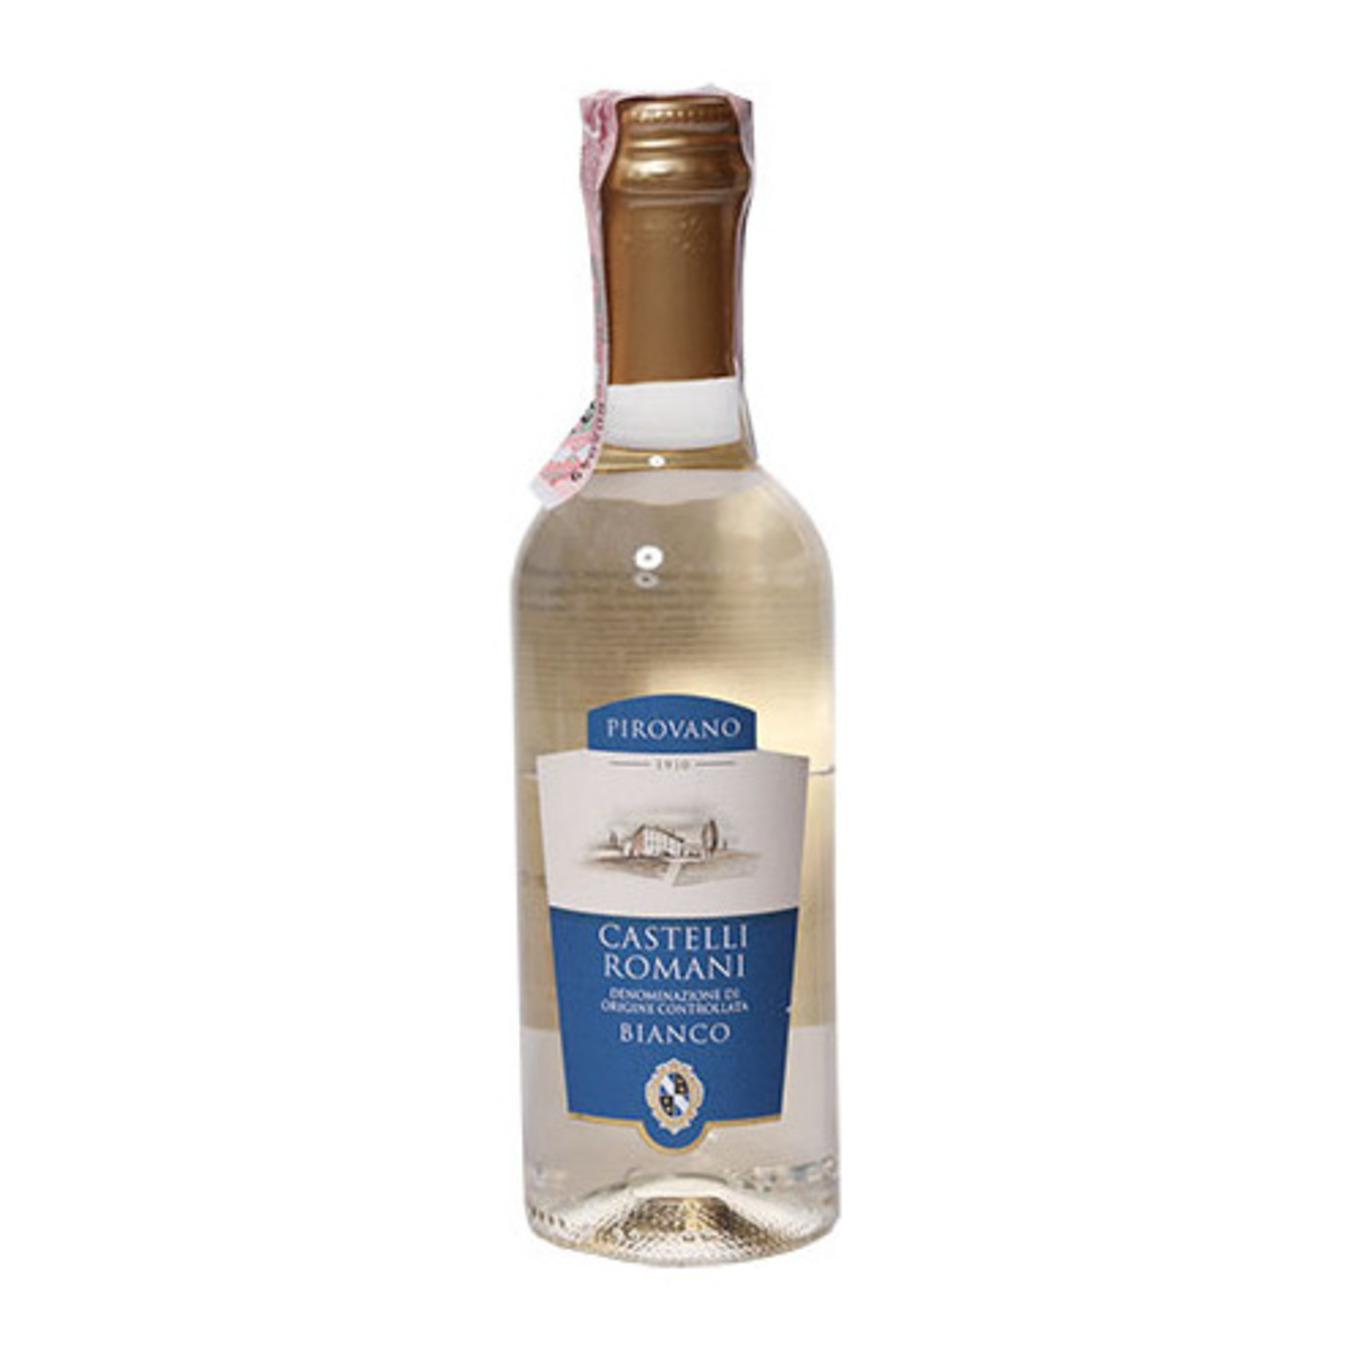 Pirovano Castelli Romano Lazio Dry White Wine 11,5% 0,25l